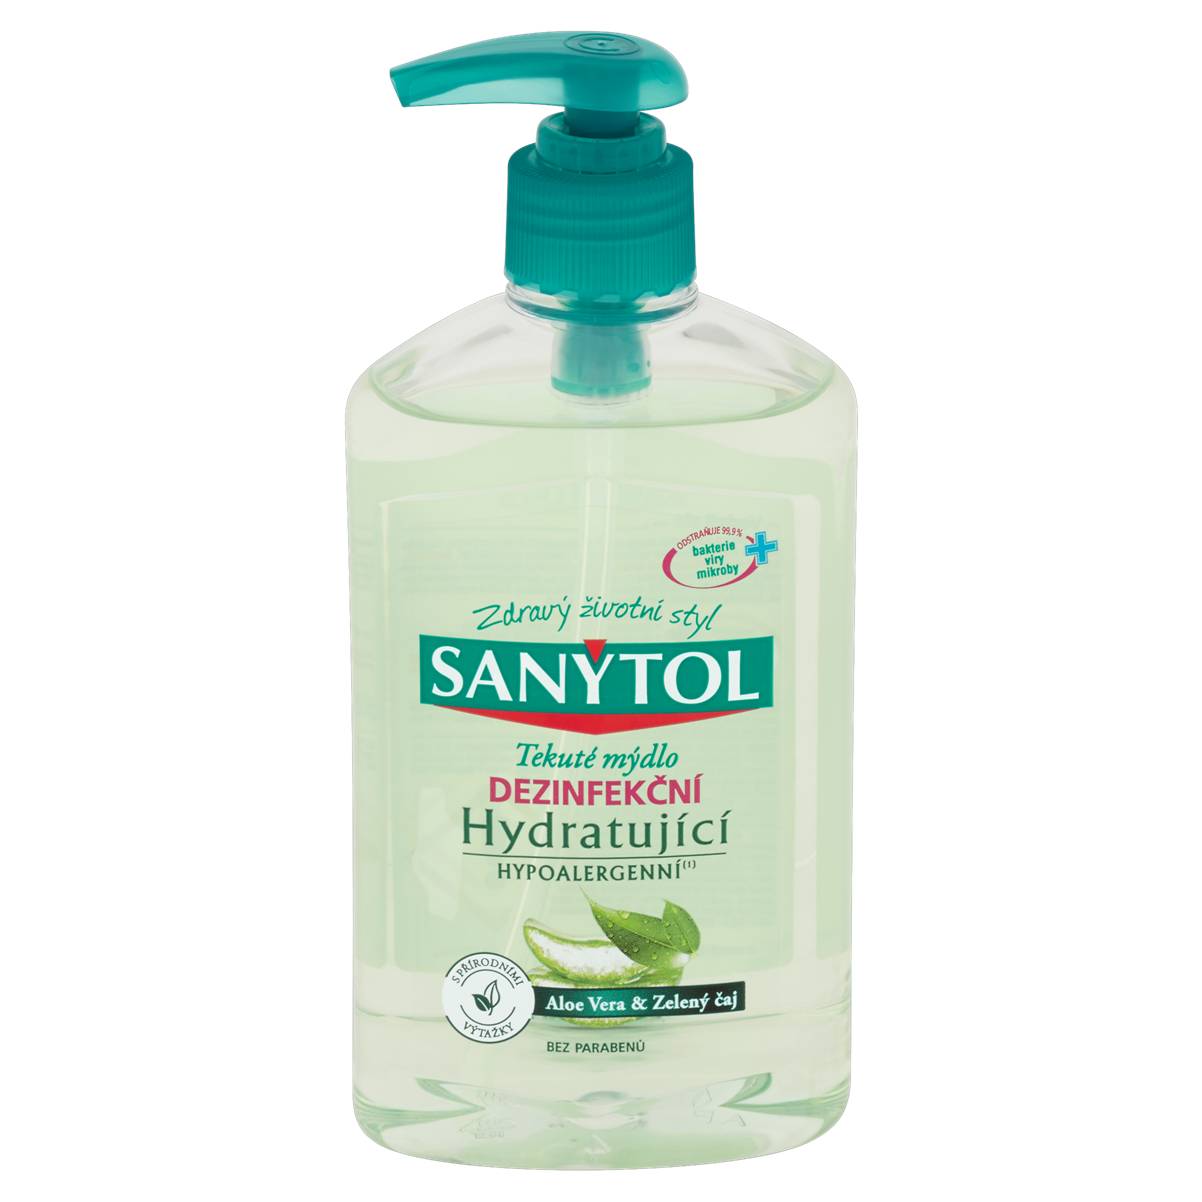 Sanytol - dezinfekční mýdlo hydratující, 250 ml